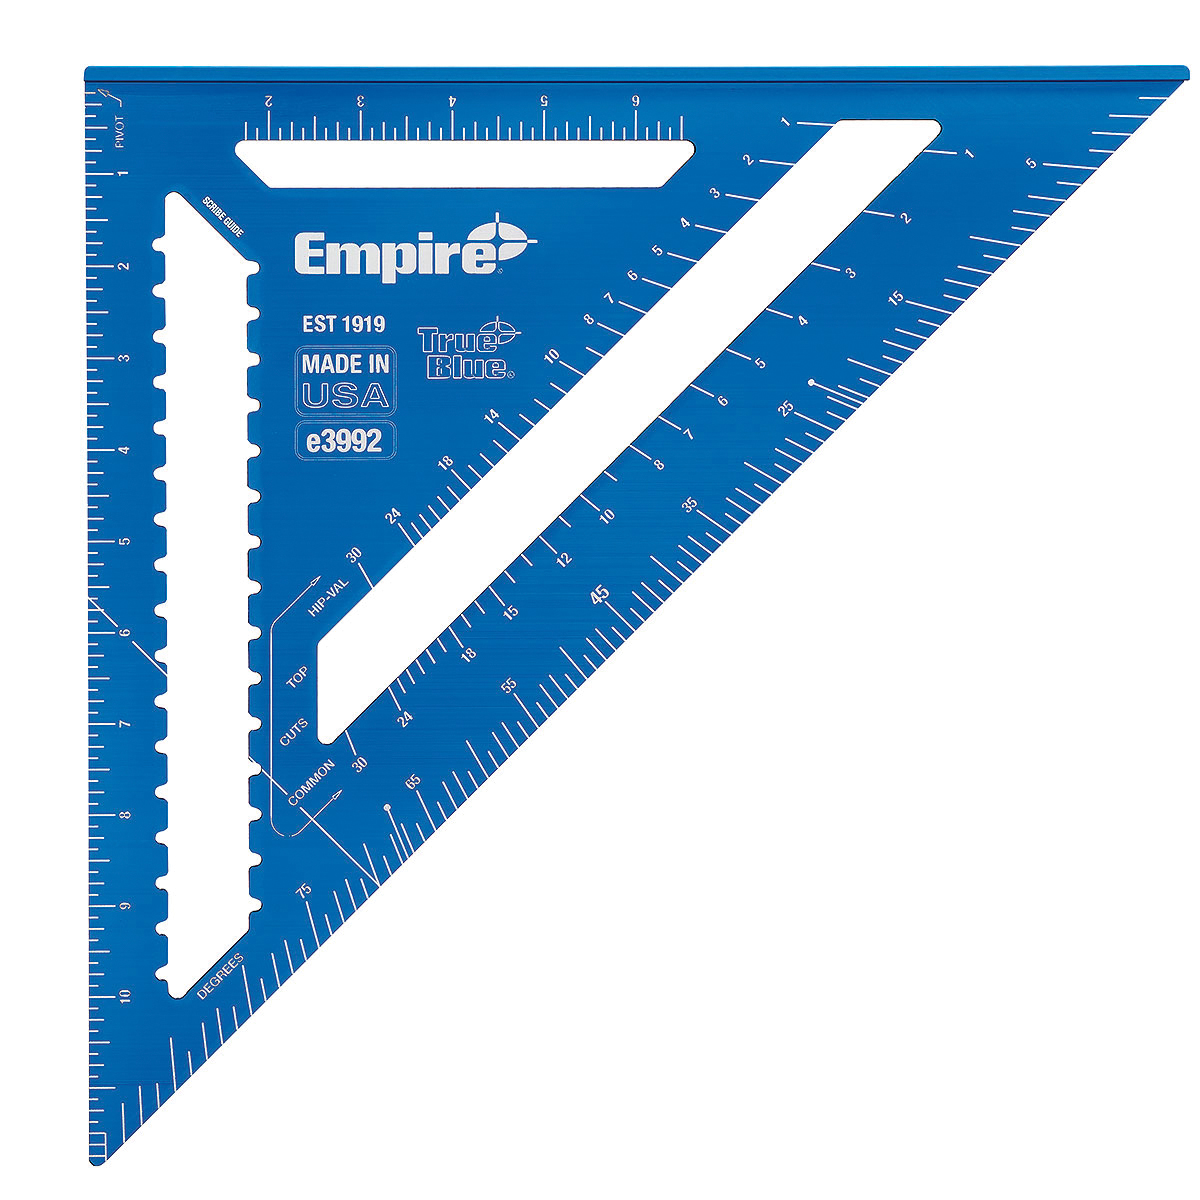 Empire E3992